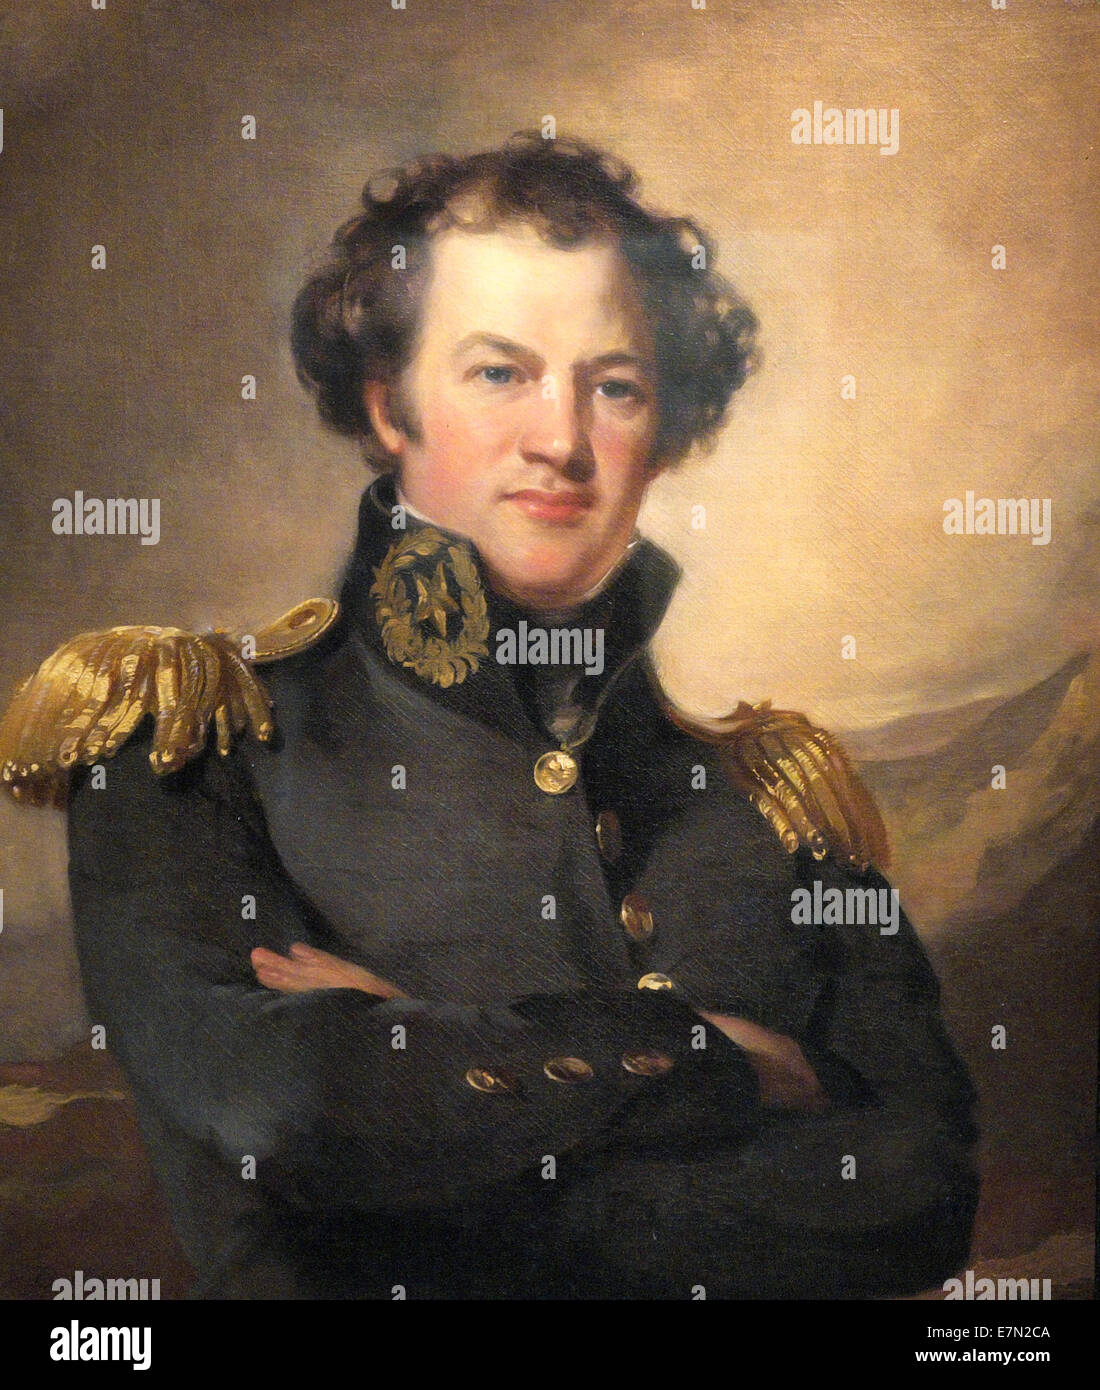 Alexander Macomb, Kommandierender General der USA Armee von 1828 bis 1841 Stockfoto